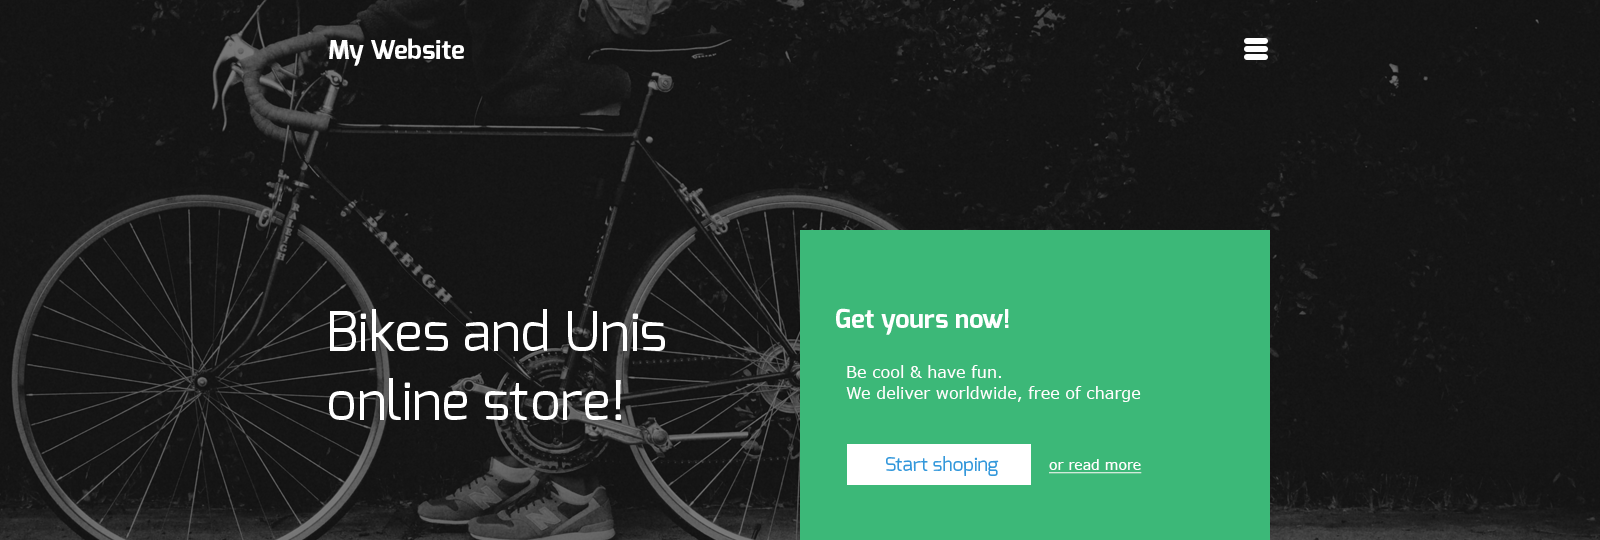 自行车在线商店网站模板0